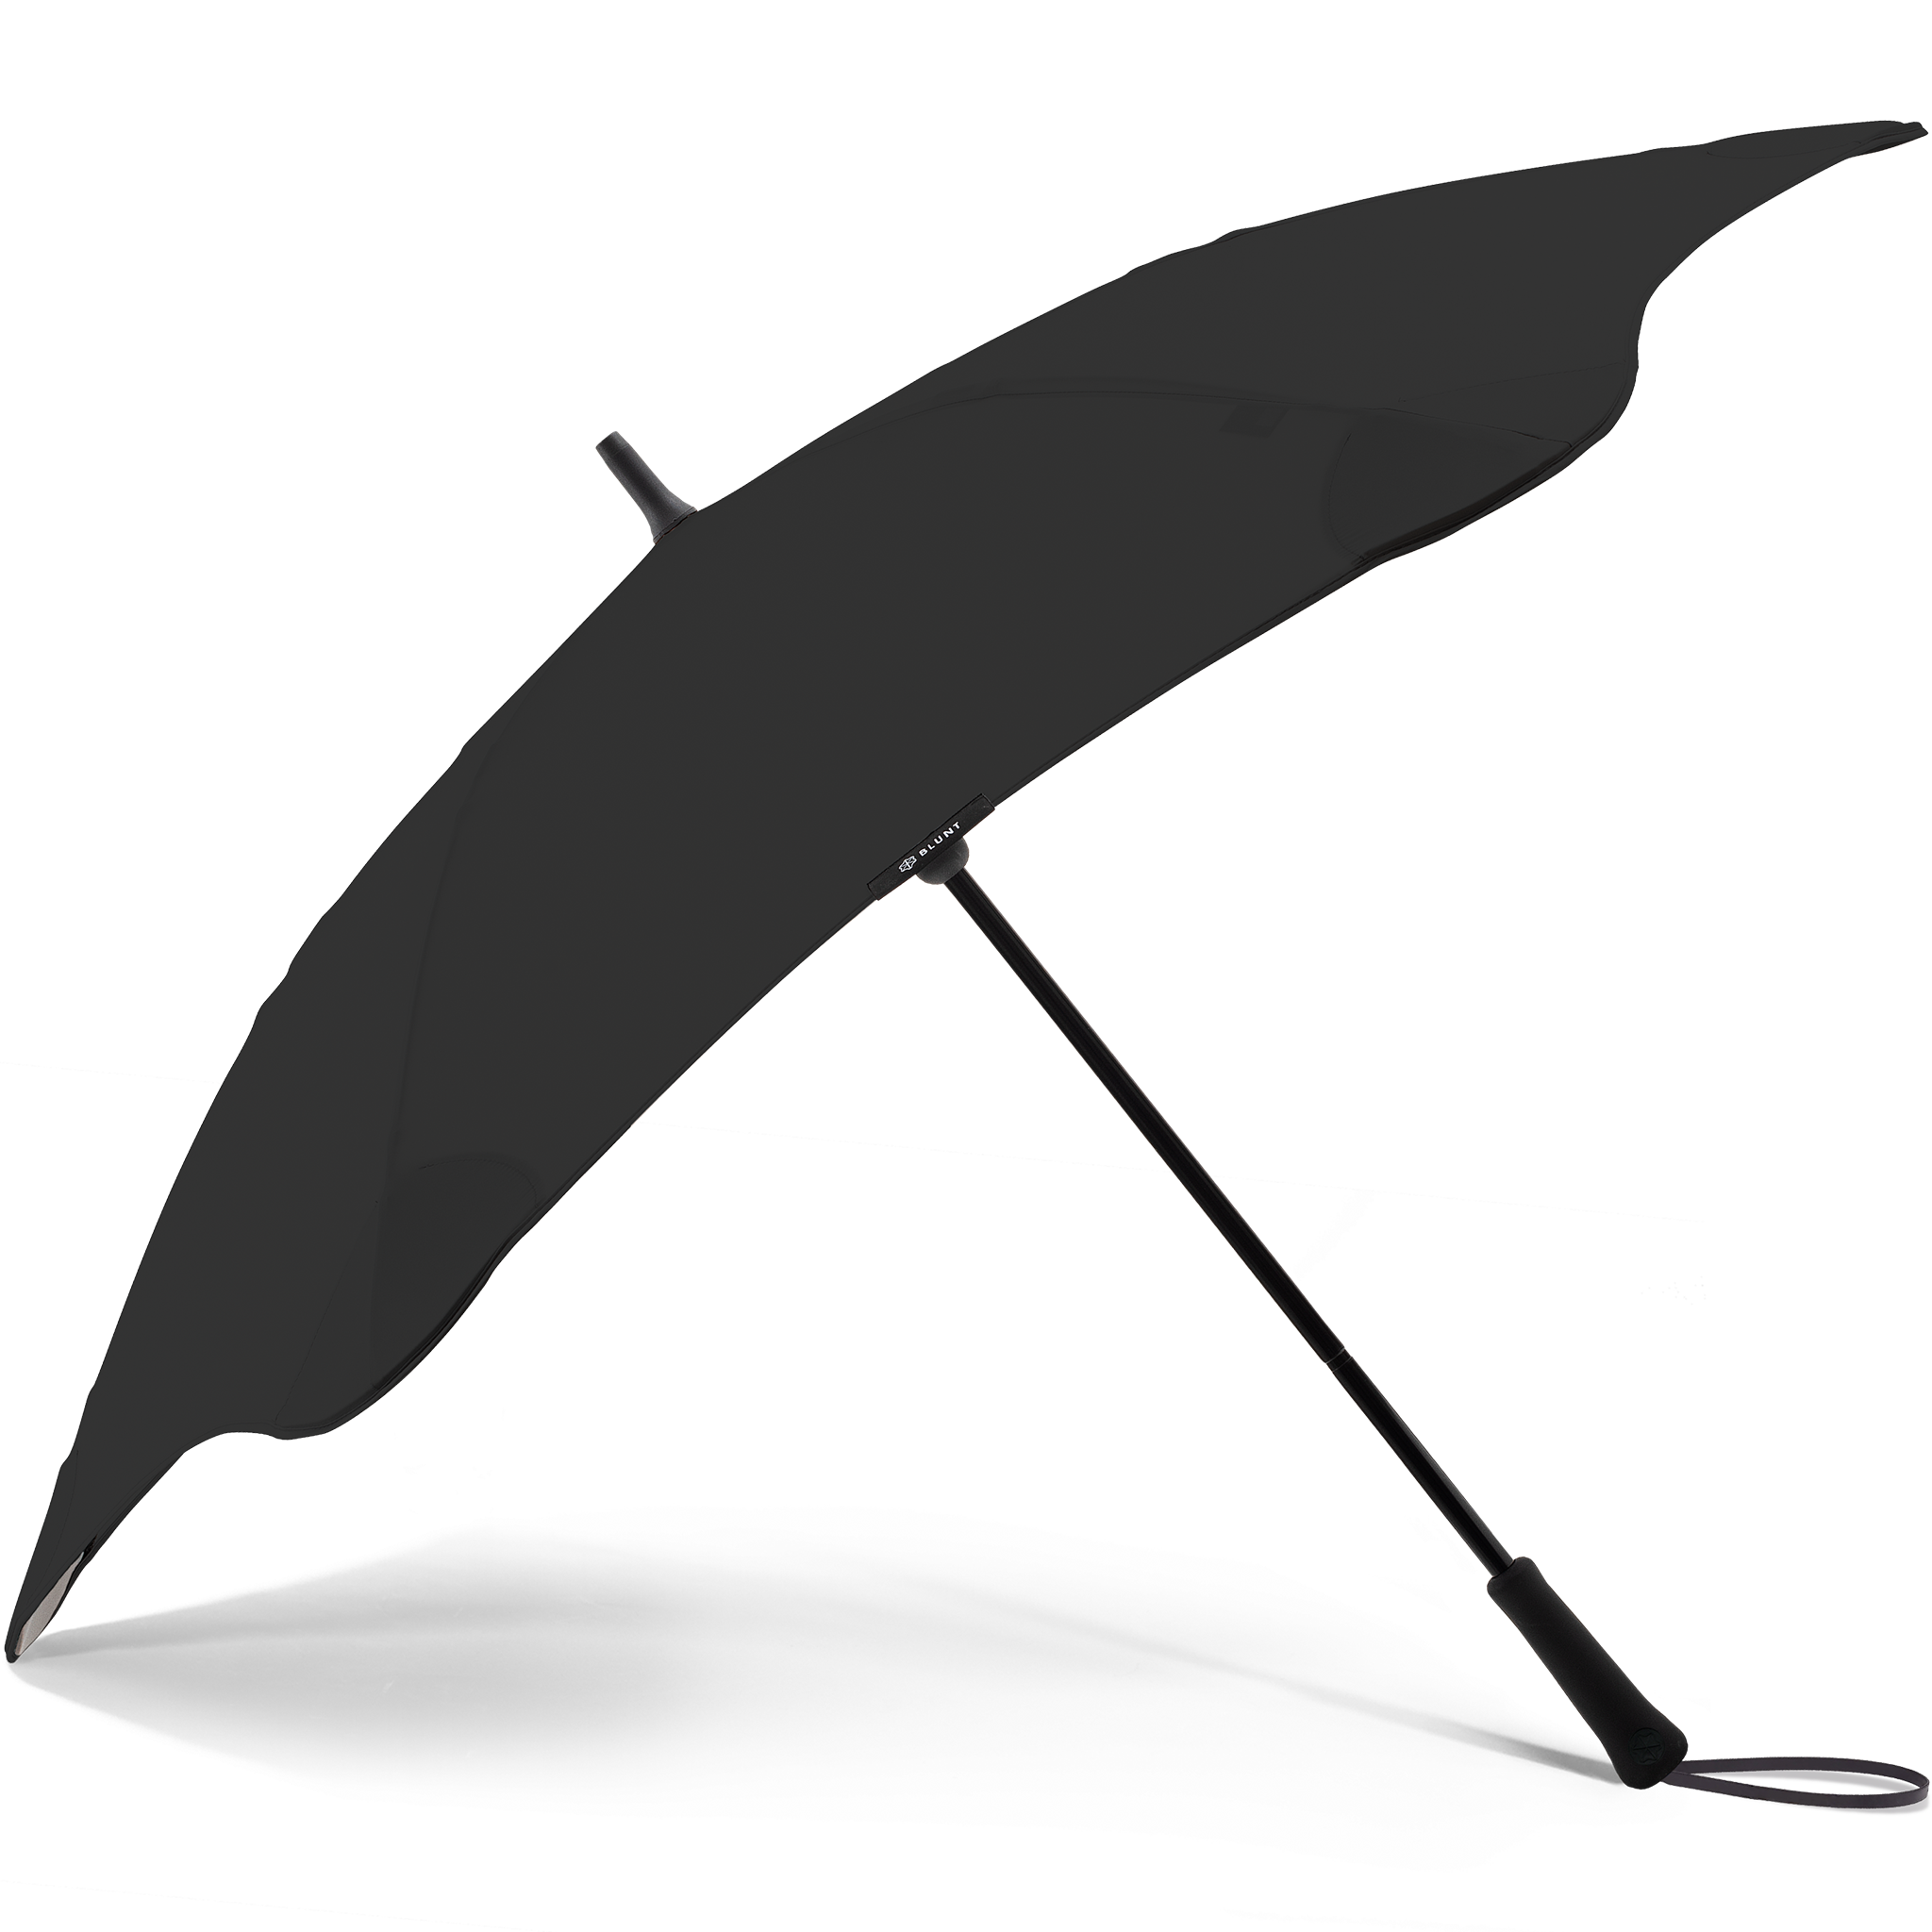 2020 Black Exec Blunt Umbrella Side View